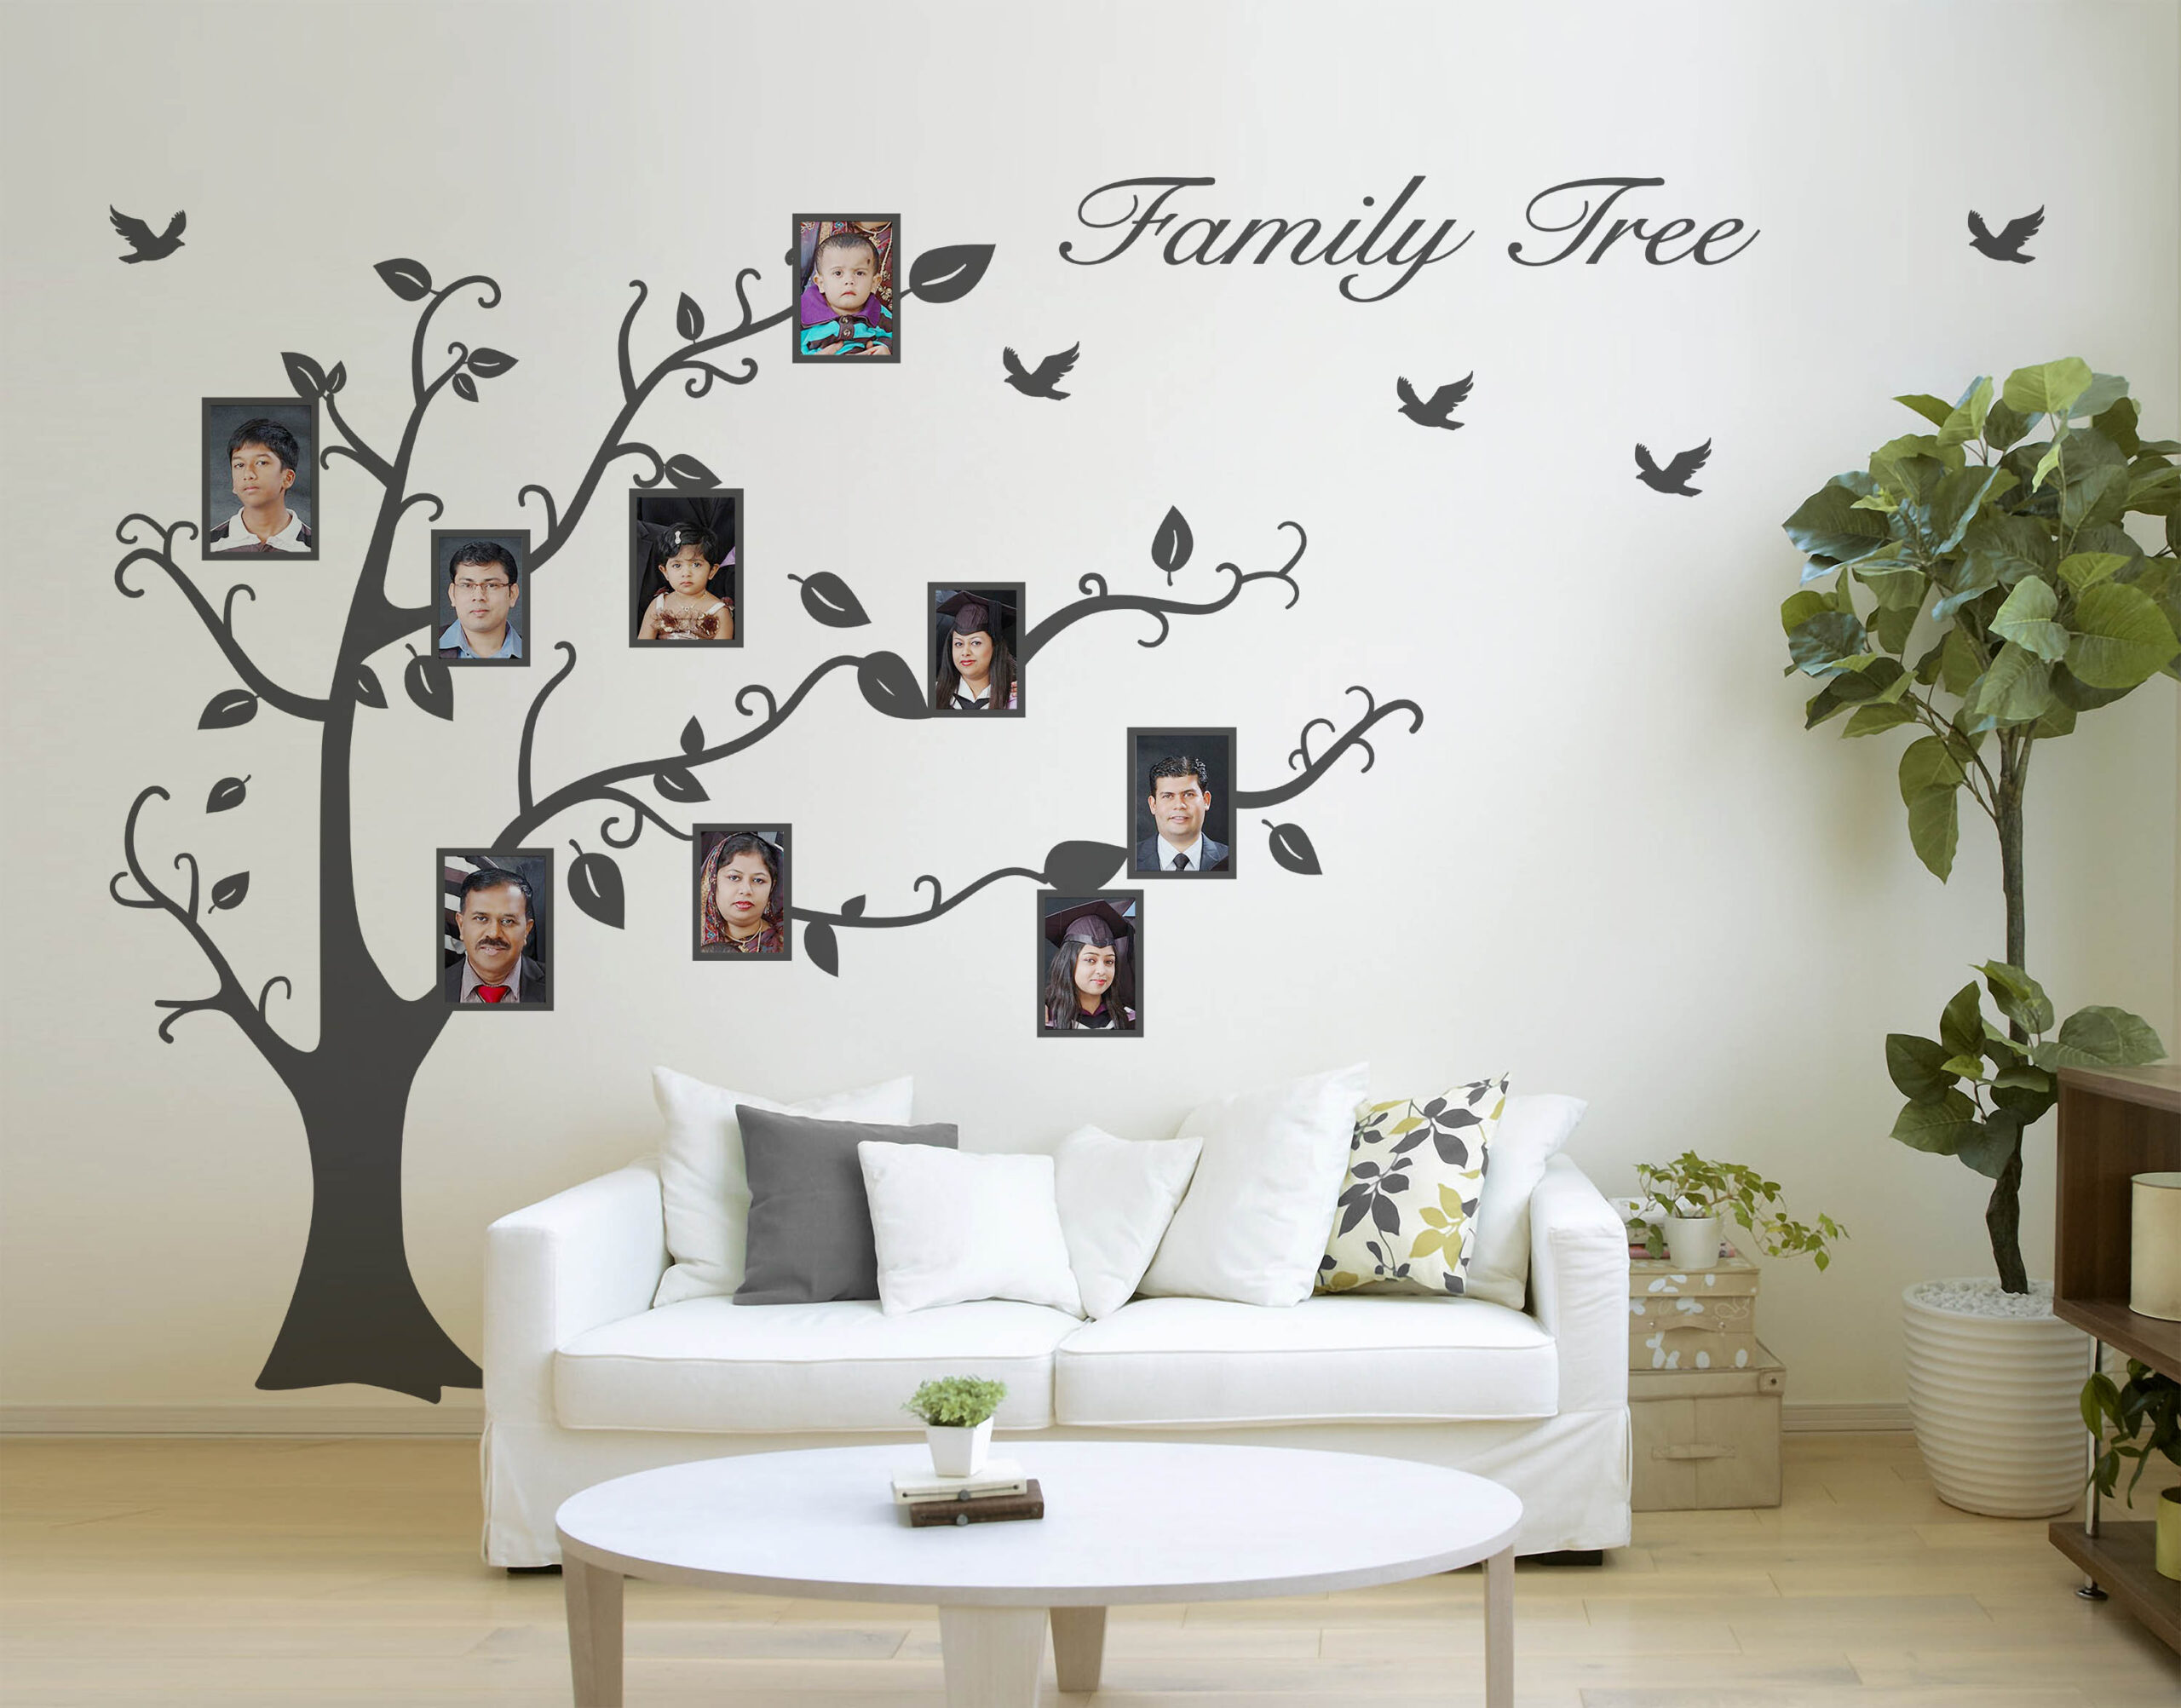 Family Tree Photo Frame Wall Sticker